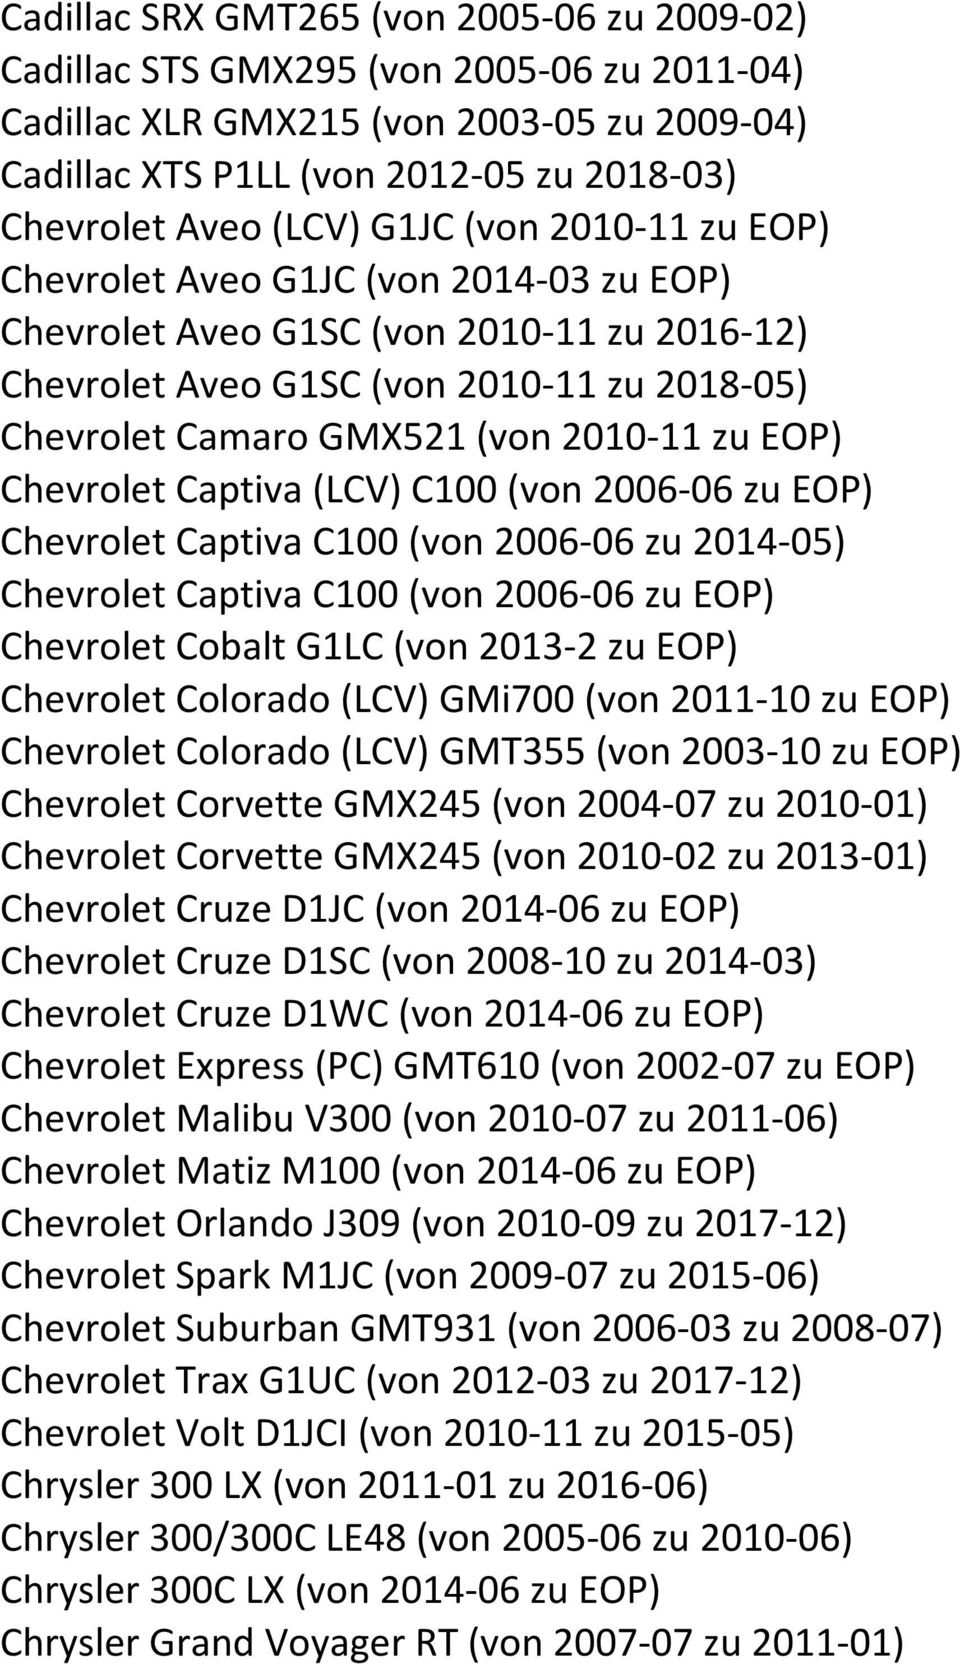 EOP) Chevrolet Captiva (LCV) C100 (von 2006-06 zu EOP) Chevrolet Captiva C100 (von 2006-06 zu 2014-05) Chevrolet Captiva C100 (von 2006-06 zu EOP) Chevrolet Cobalt G1LC (von 2013-2 zu EOP) Chevrolet